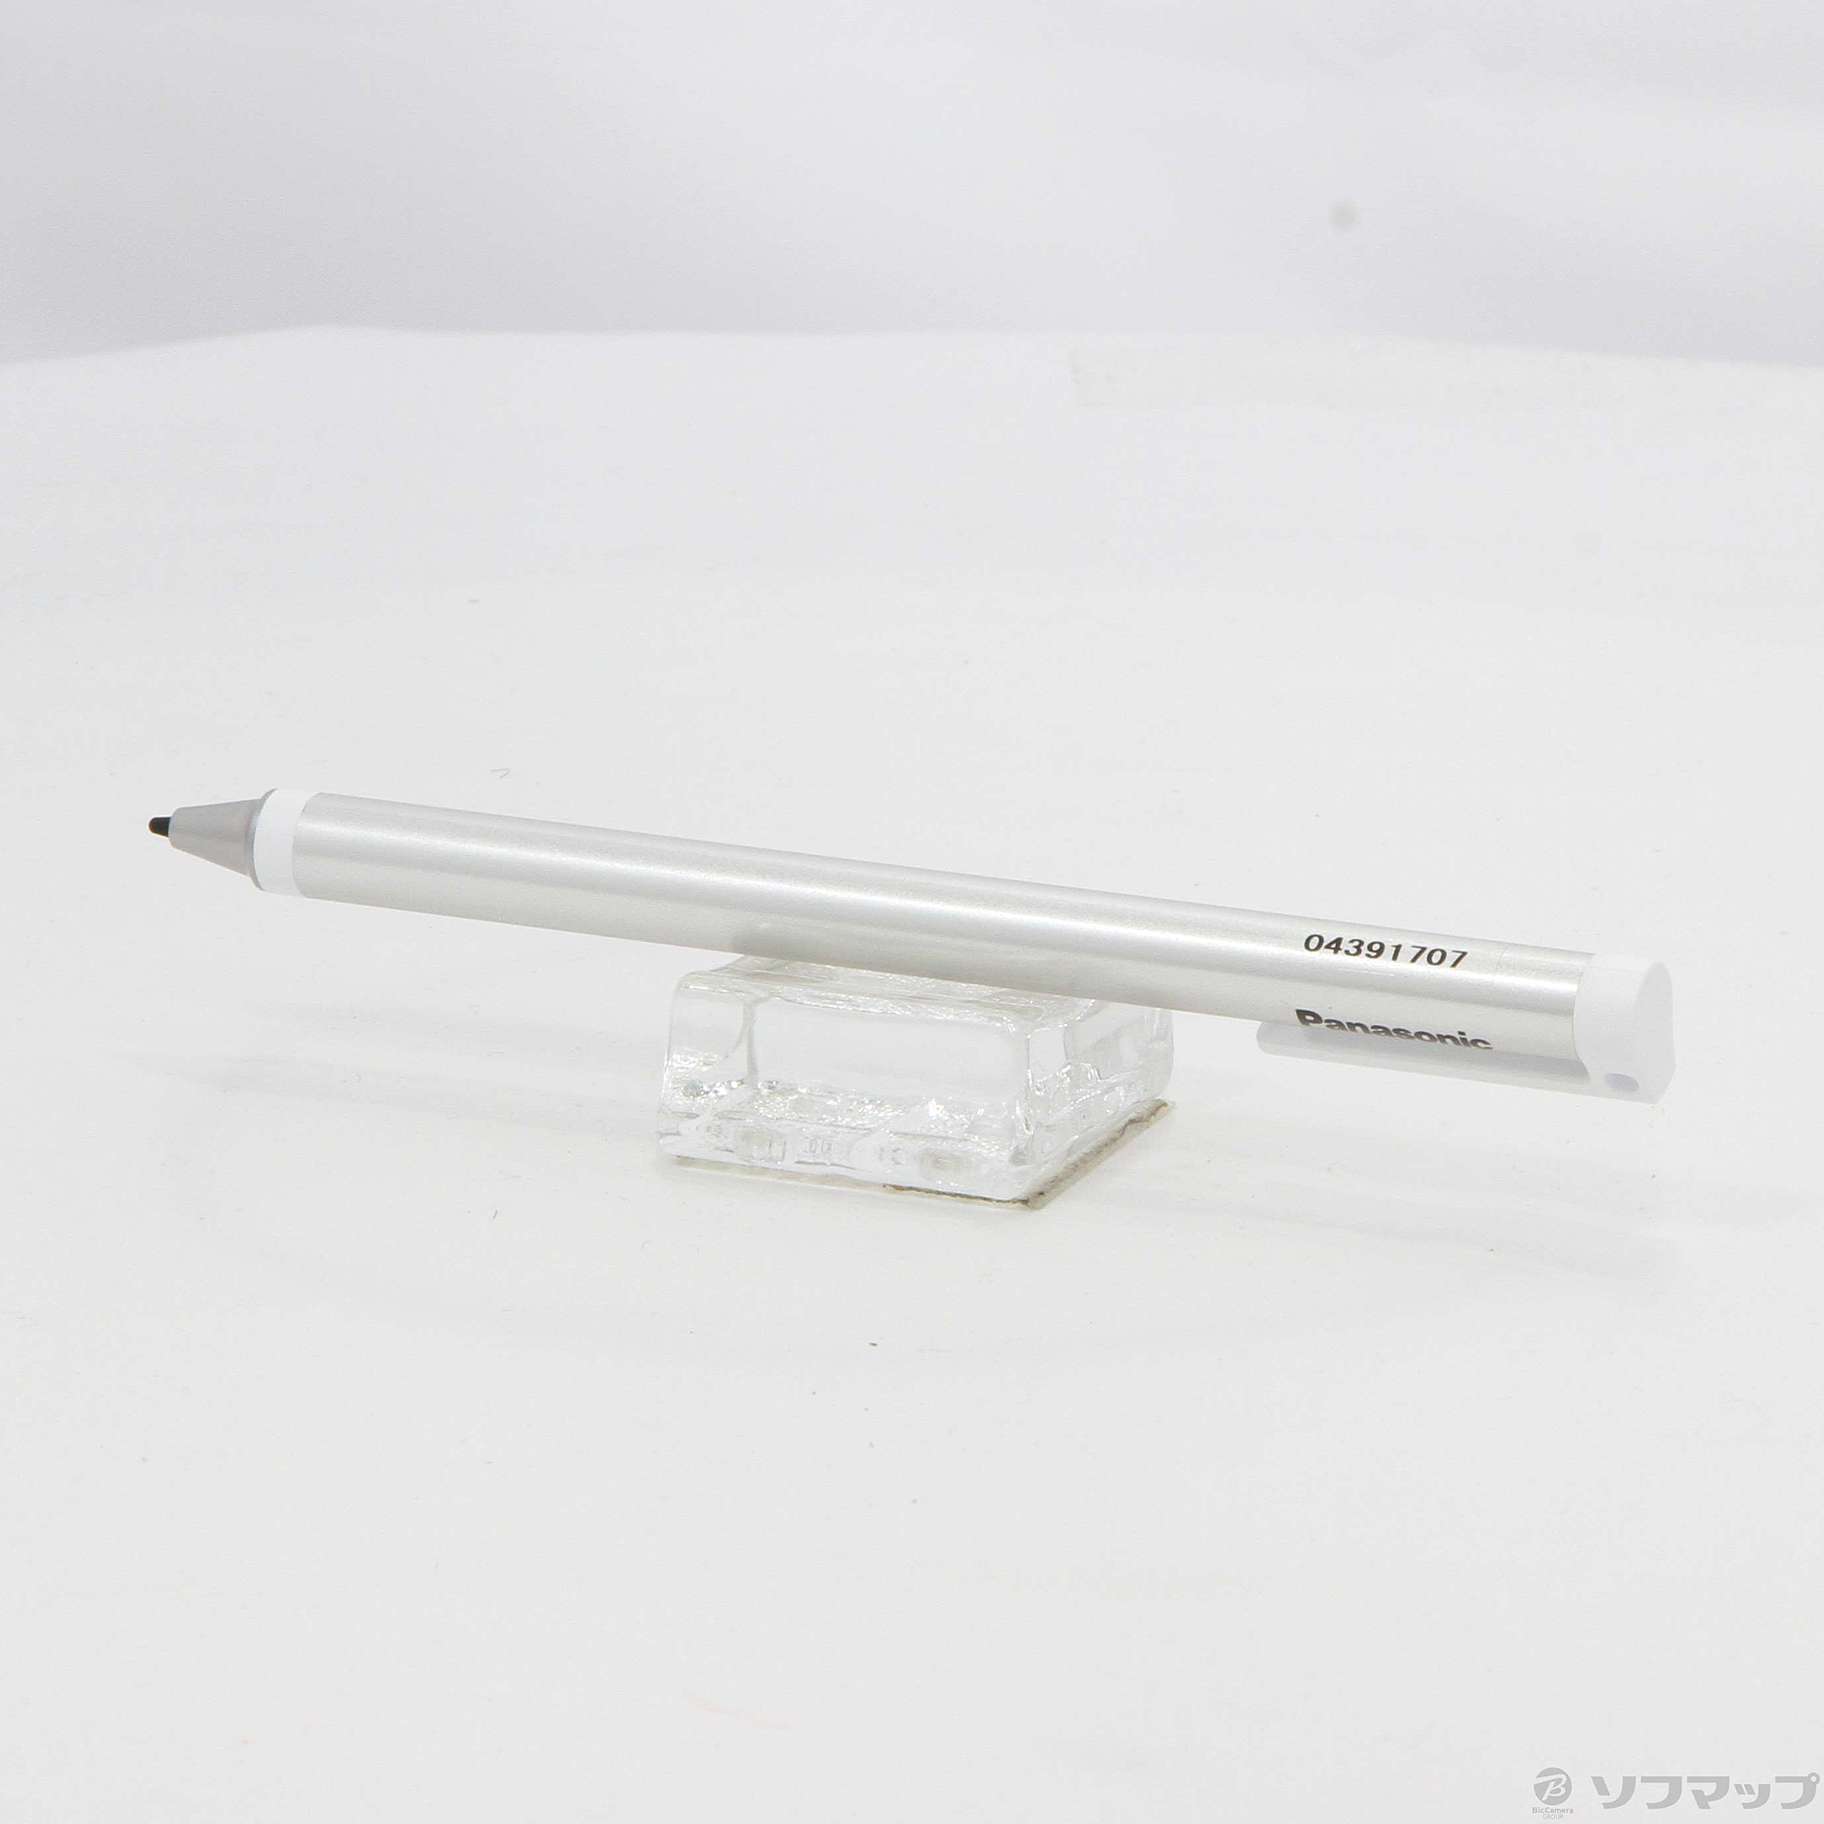 新品パナソニックLet’s NoteCF-XZシリーズ専用アクティブペン